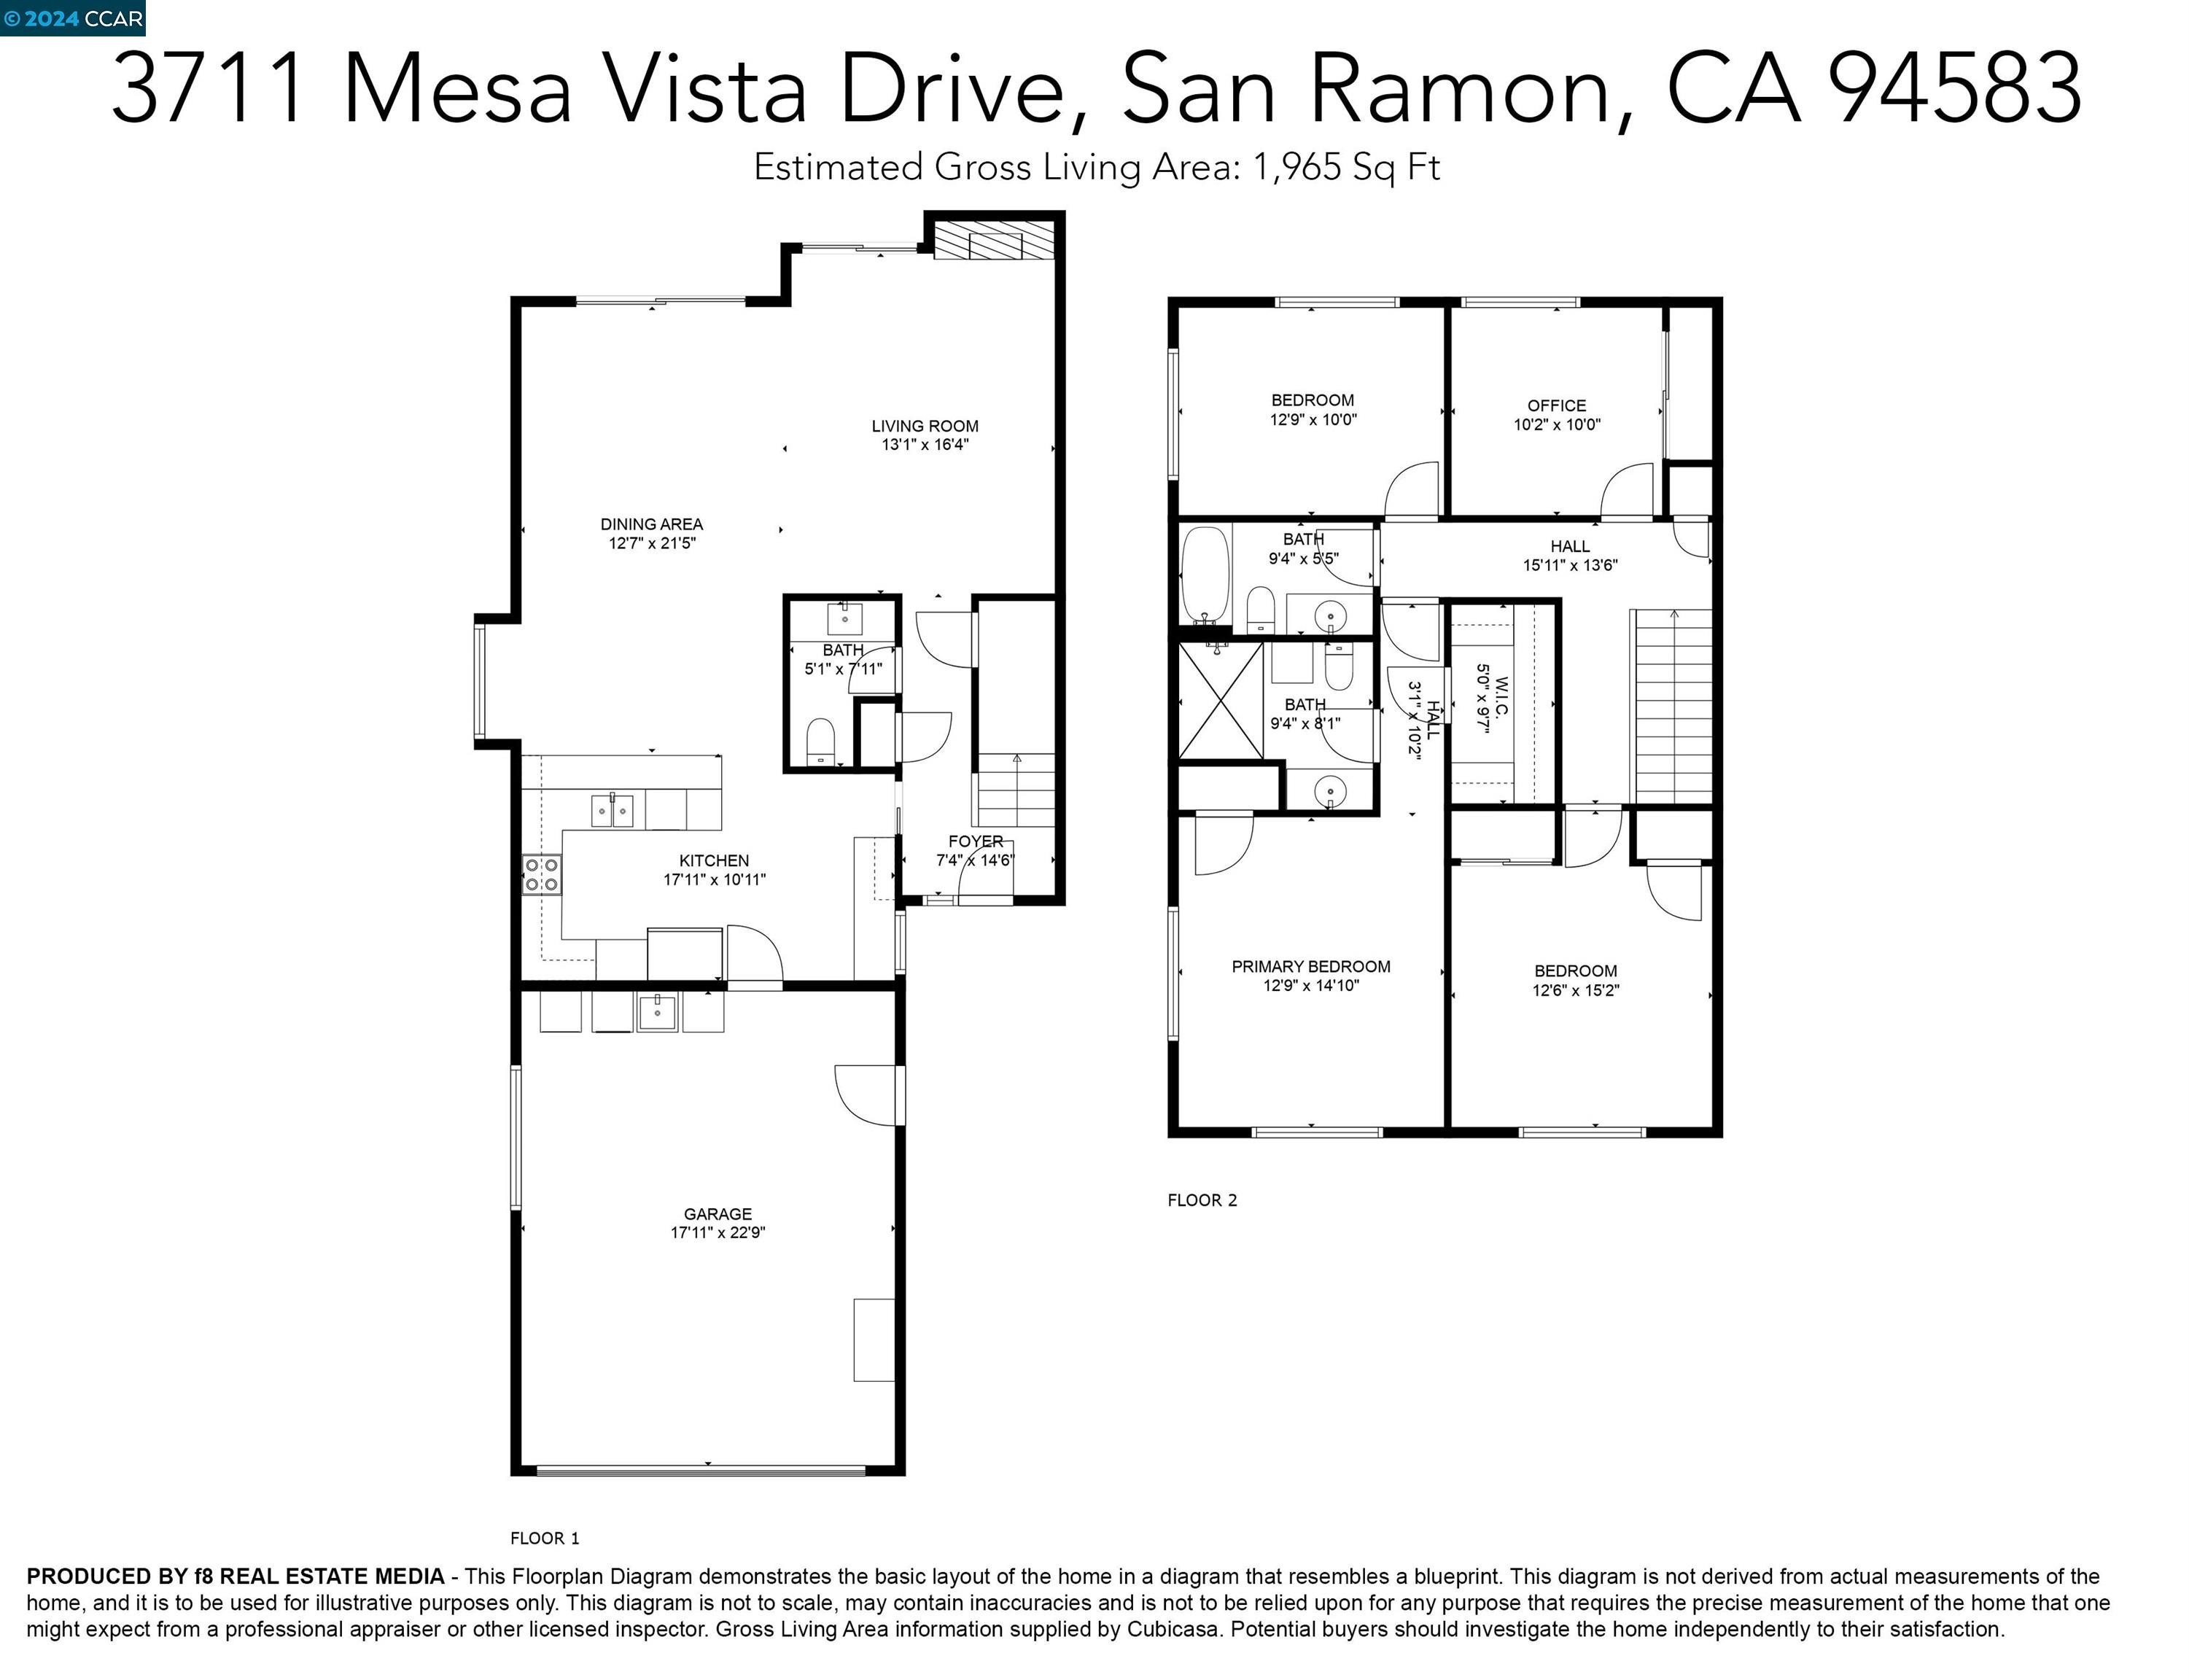 41. 3711 Mesa Vista Drive